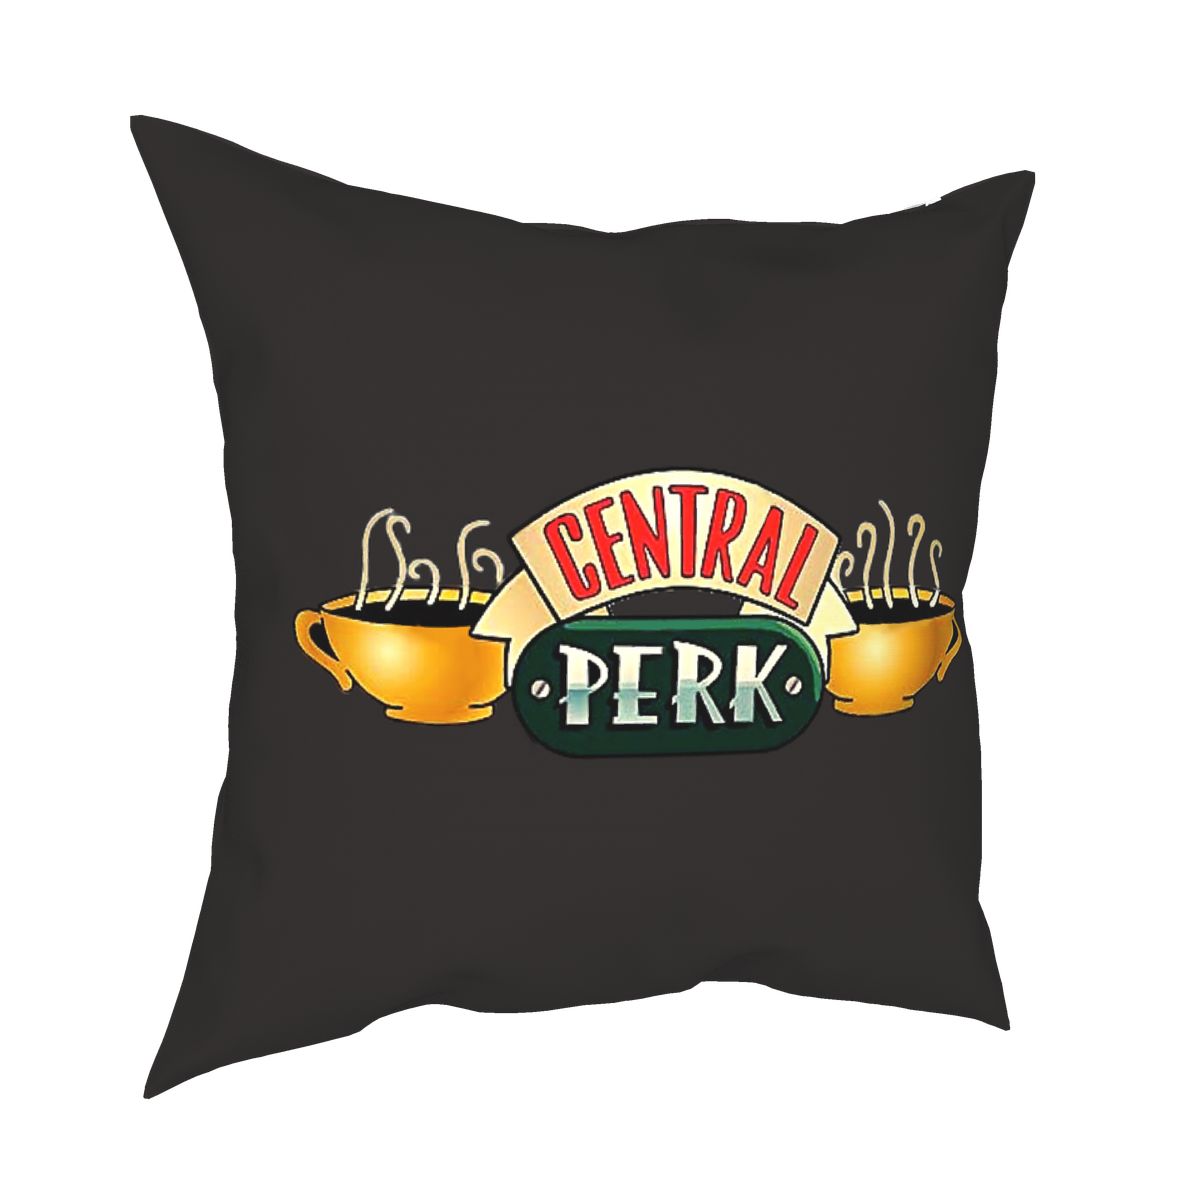 Capa de Almofada "Central Perk" - Friends - Séries de TV